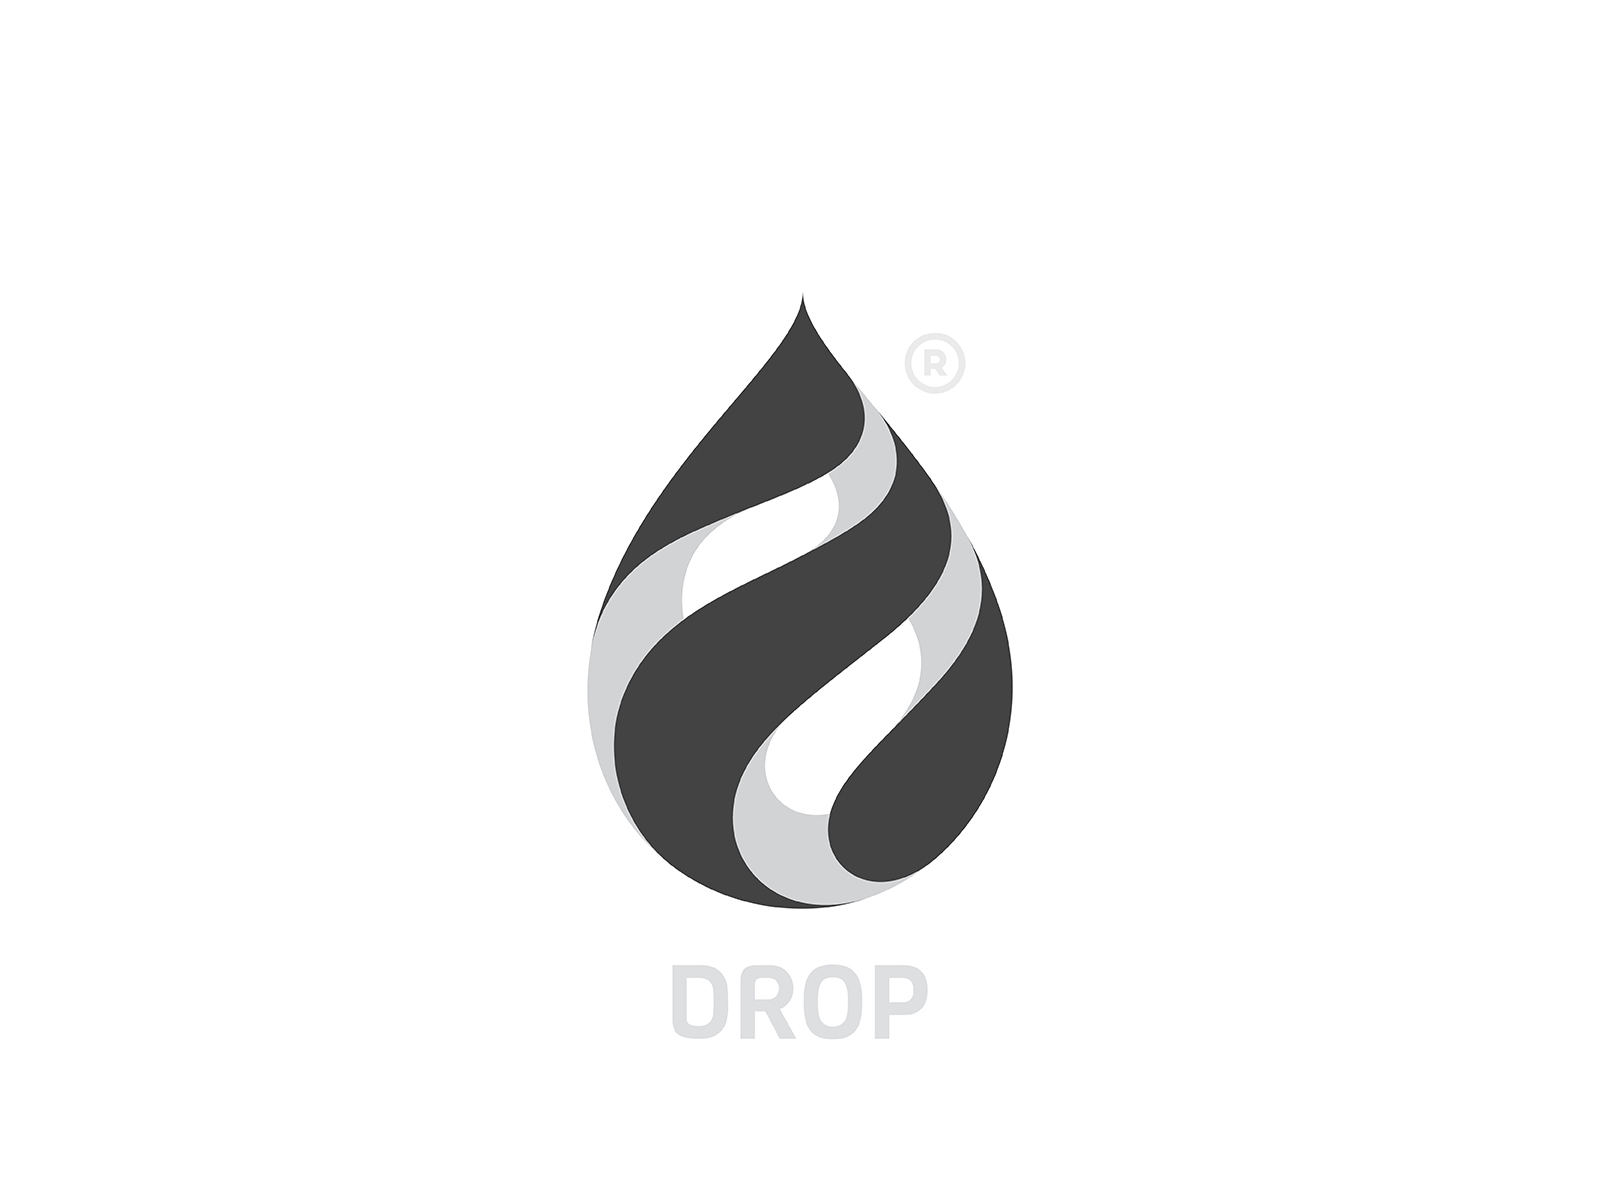 Water Drop Logo PNG – Free Download